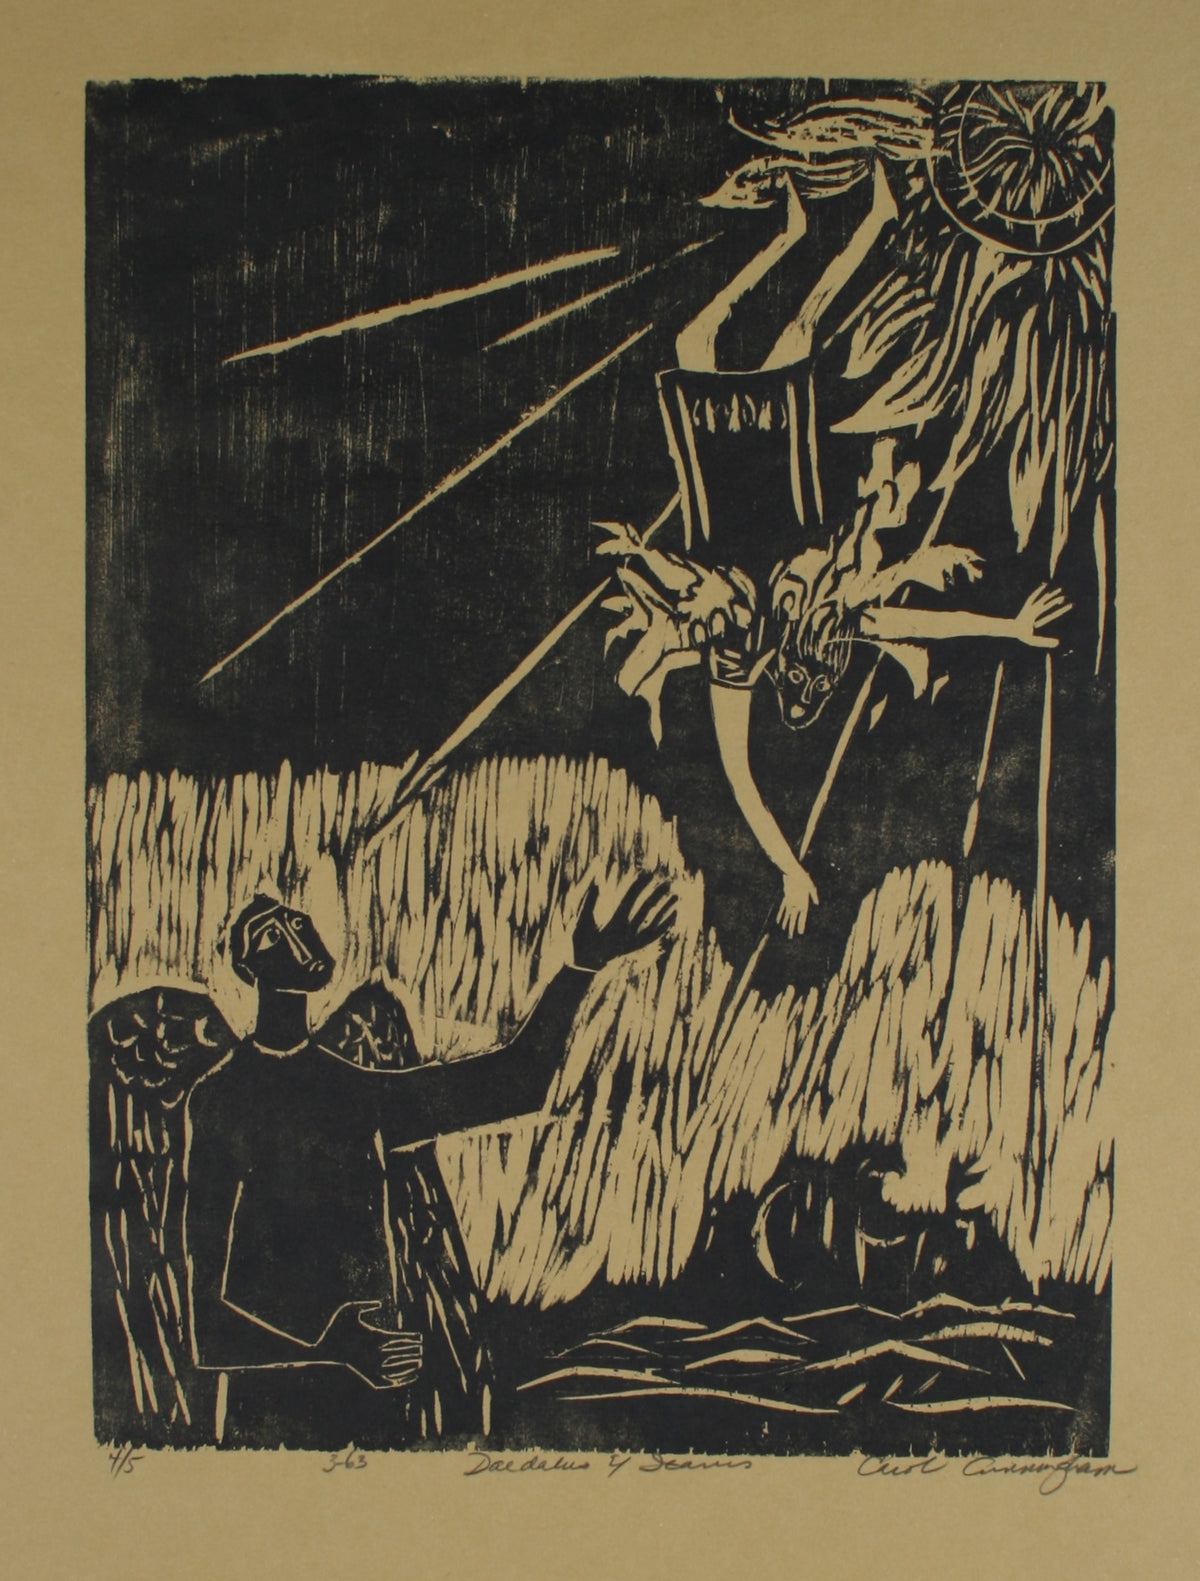 &lt;i&gt;Daedalus &amp; Icarus&lt;/i&gt;&lt;br&gt;1963 Woodcut Impression&lt;br&gt;&lt;br&gt;#71294